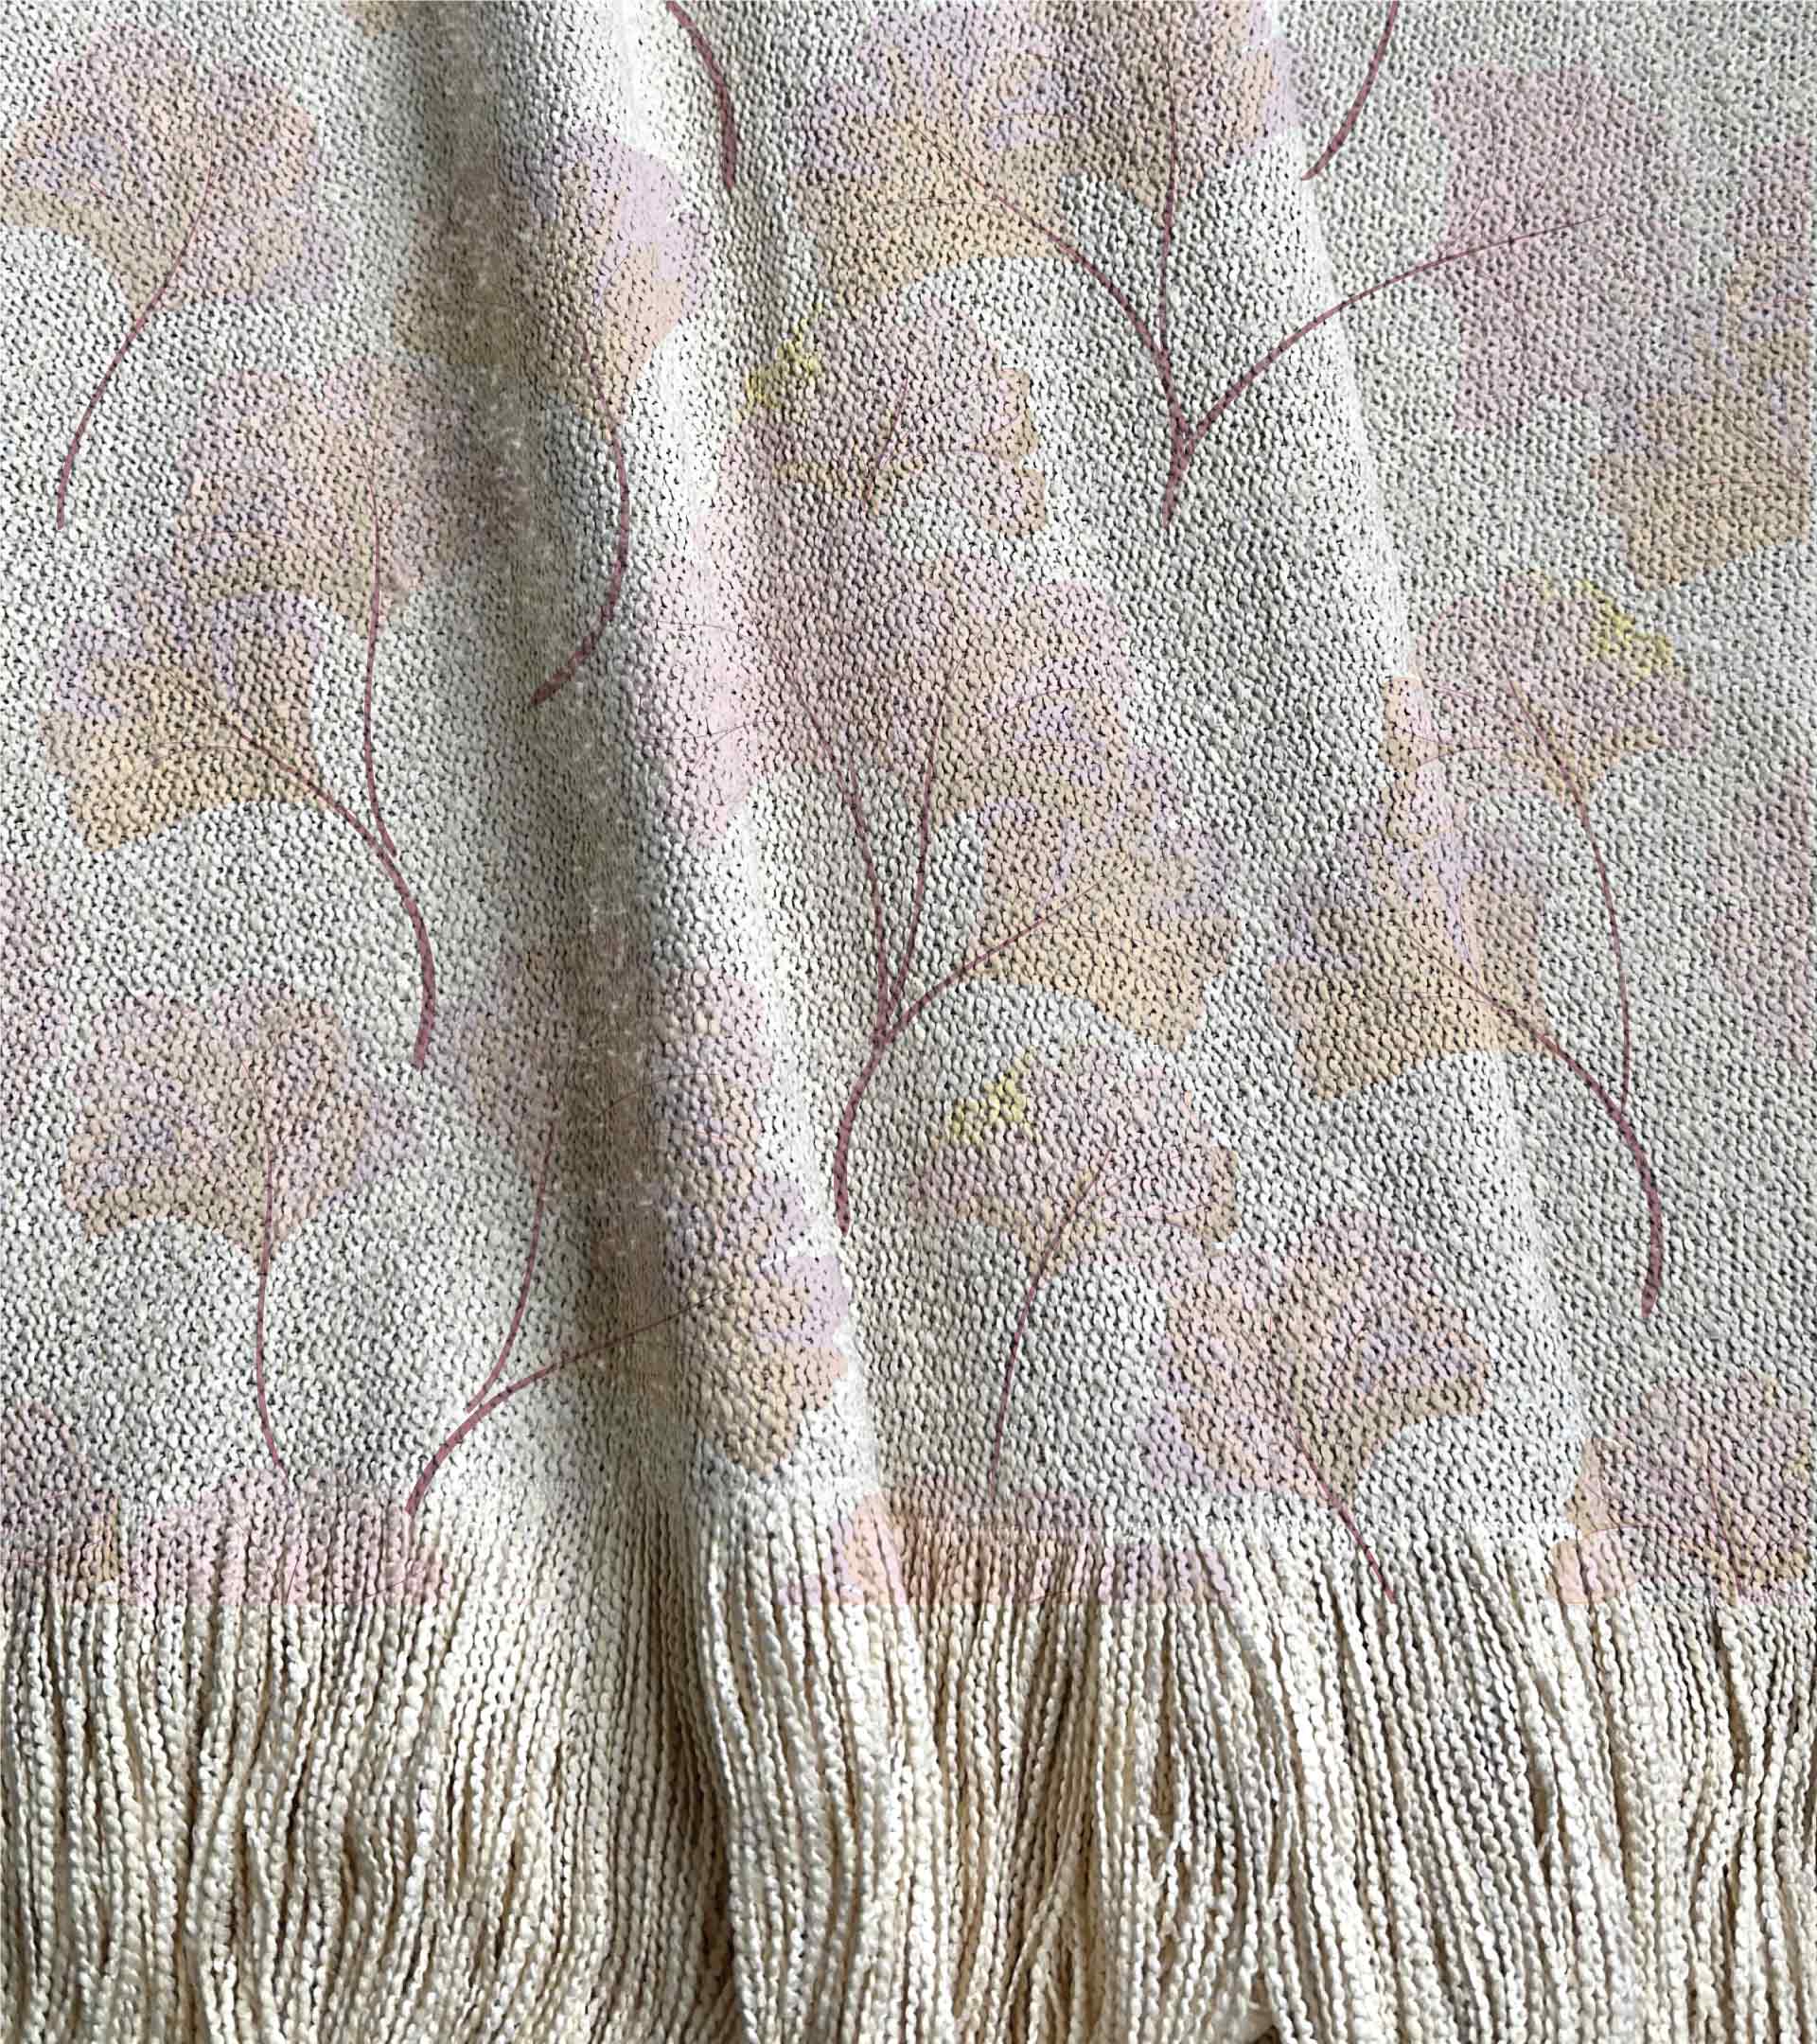 Manta tejida diseño botanico con hojas rosas de guindo biloba